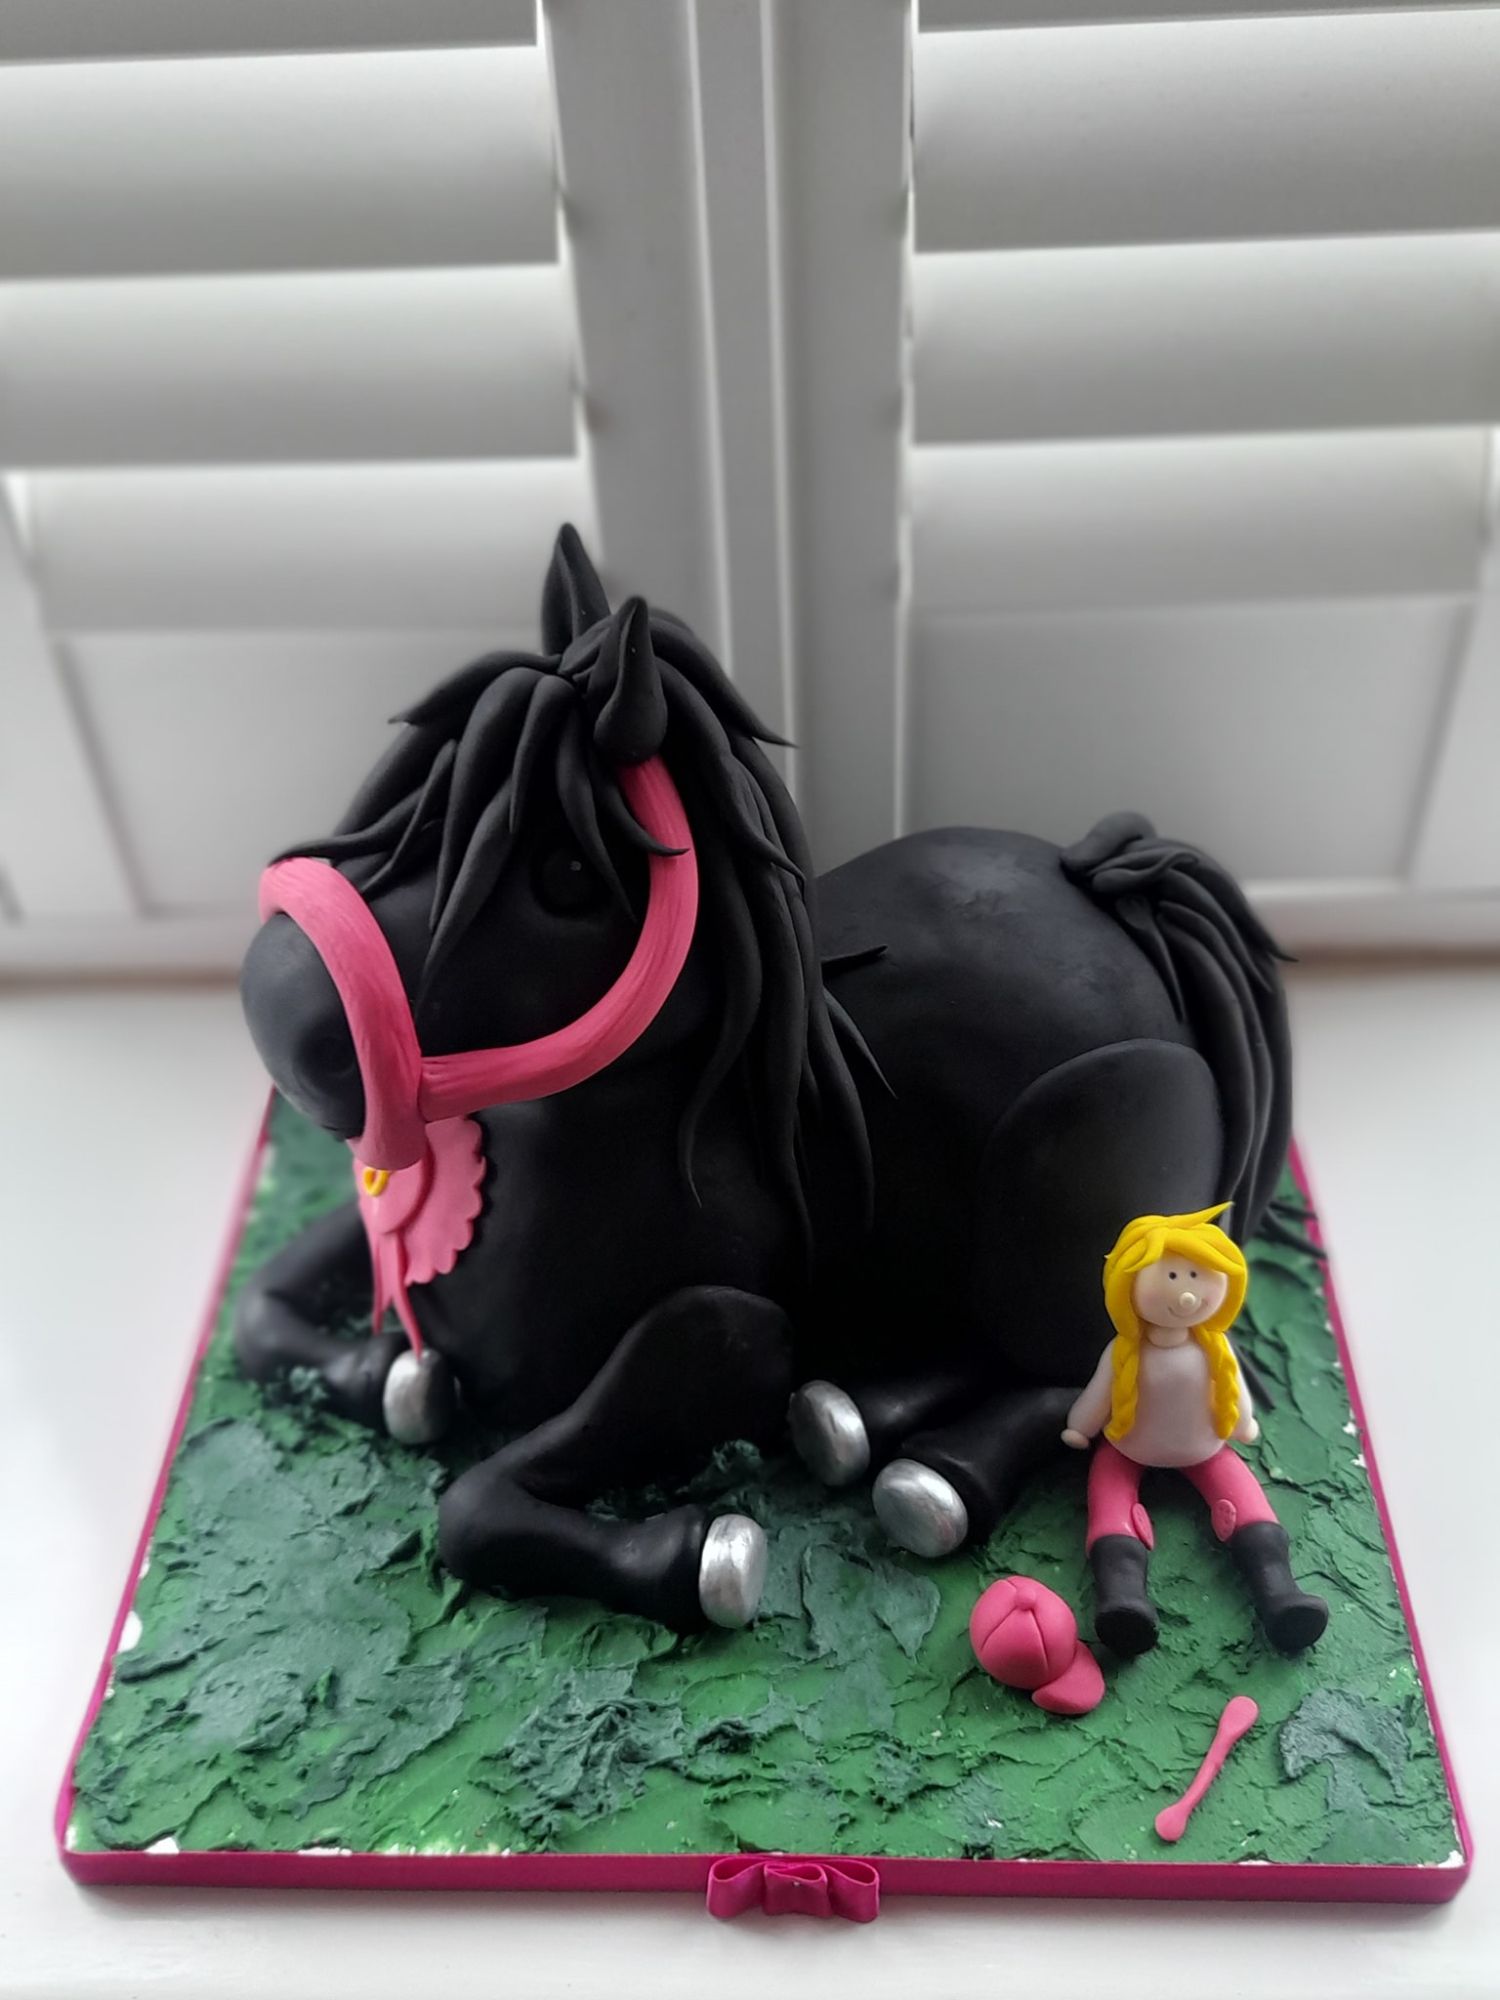 Pony cakes